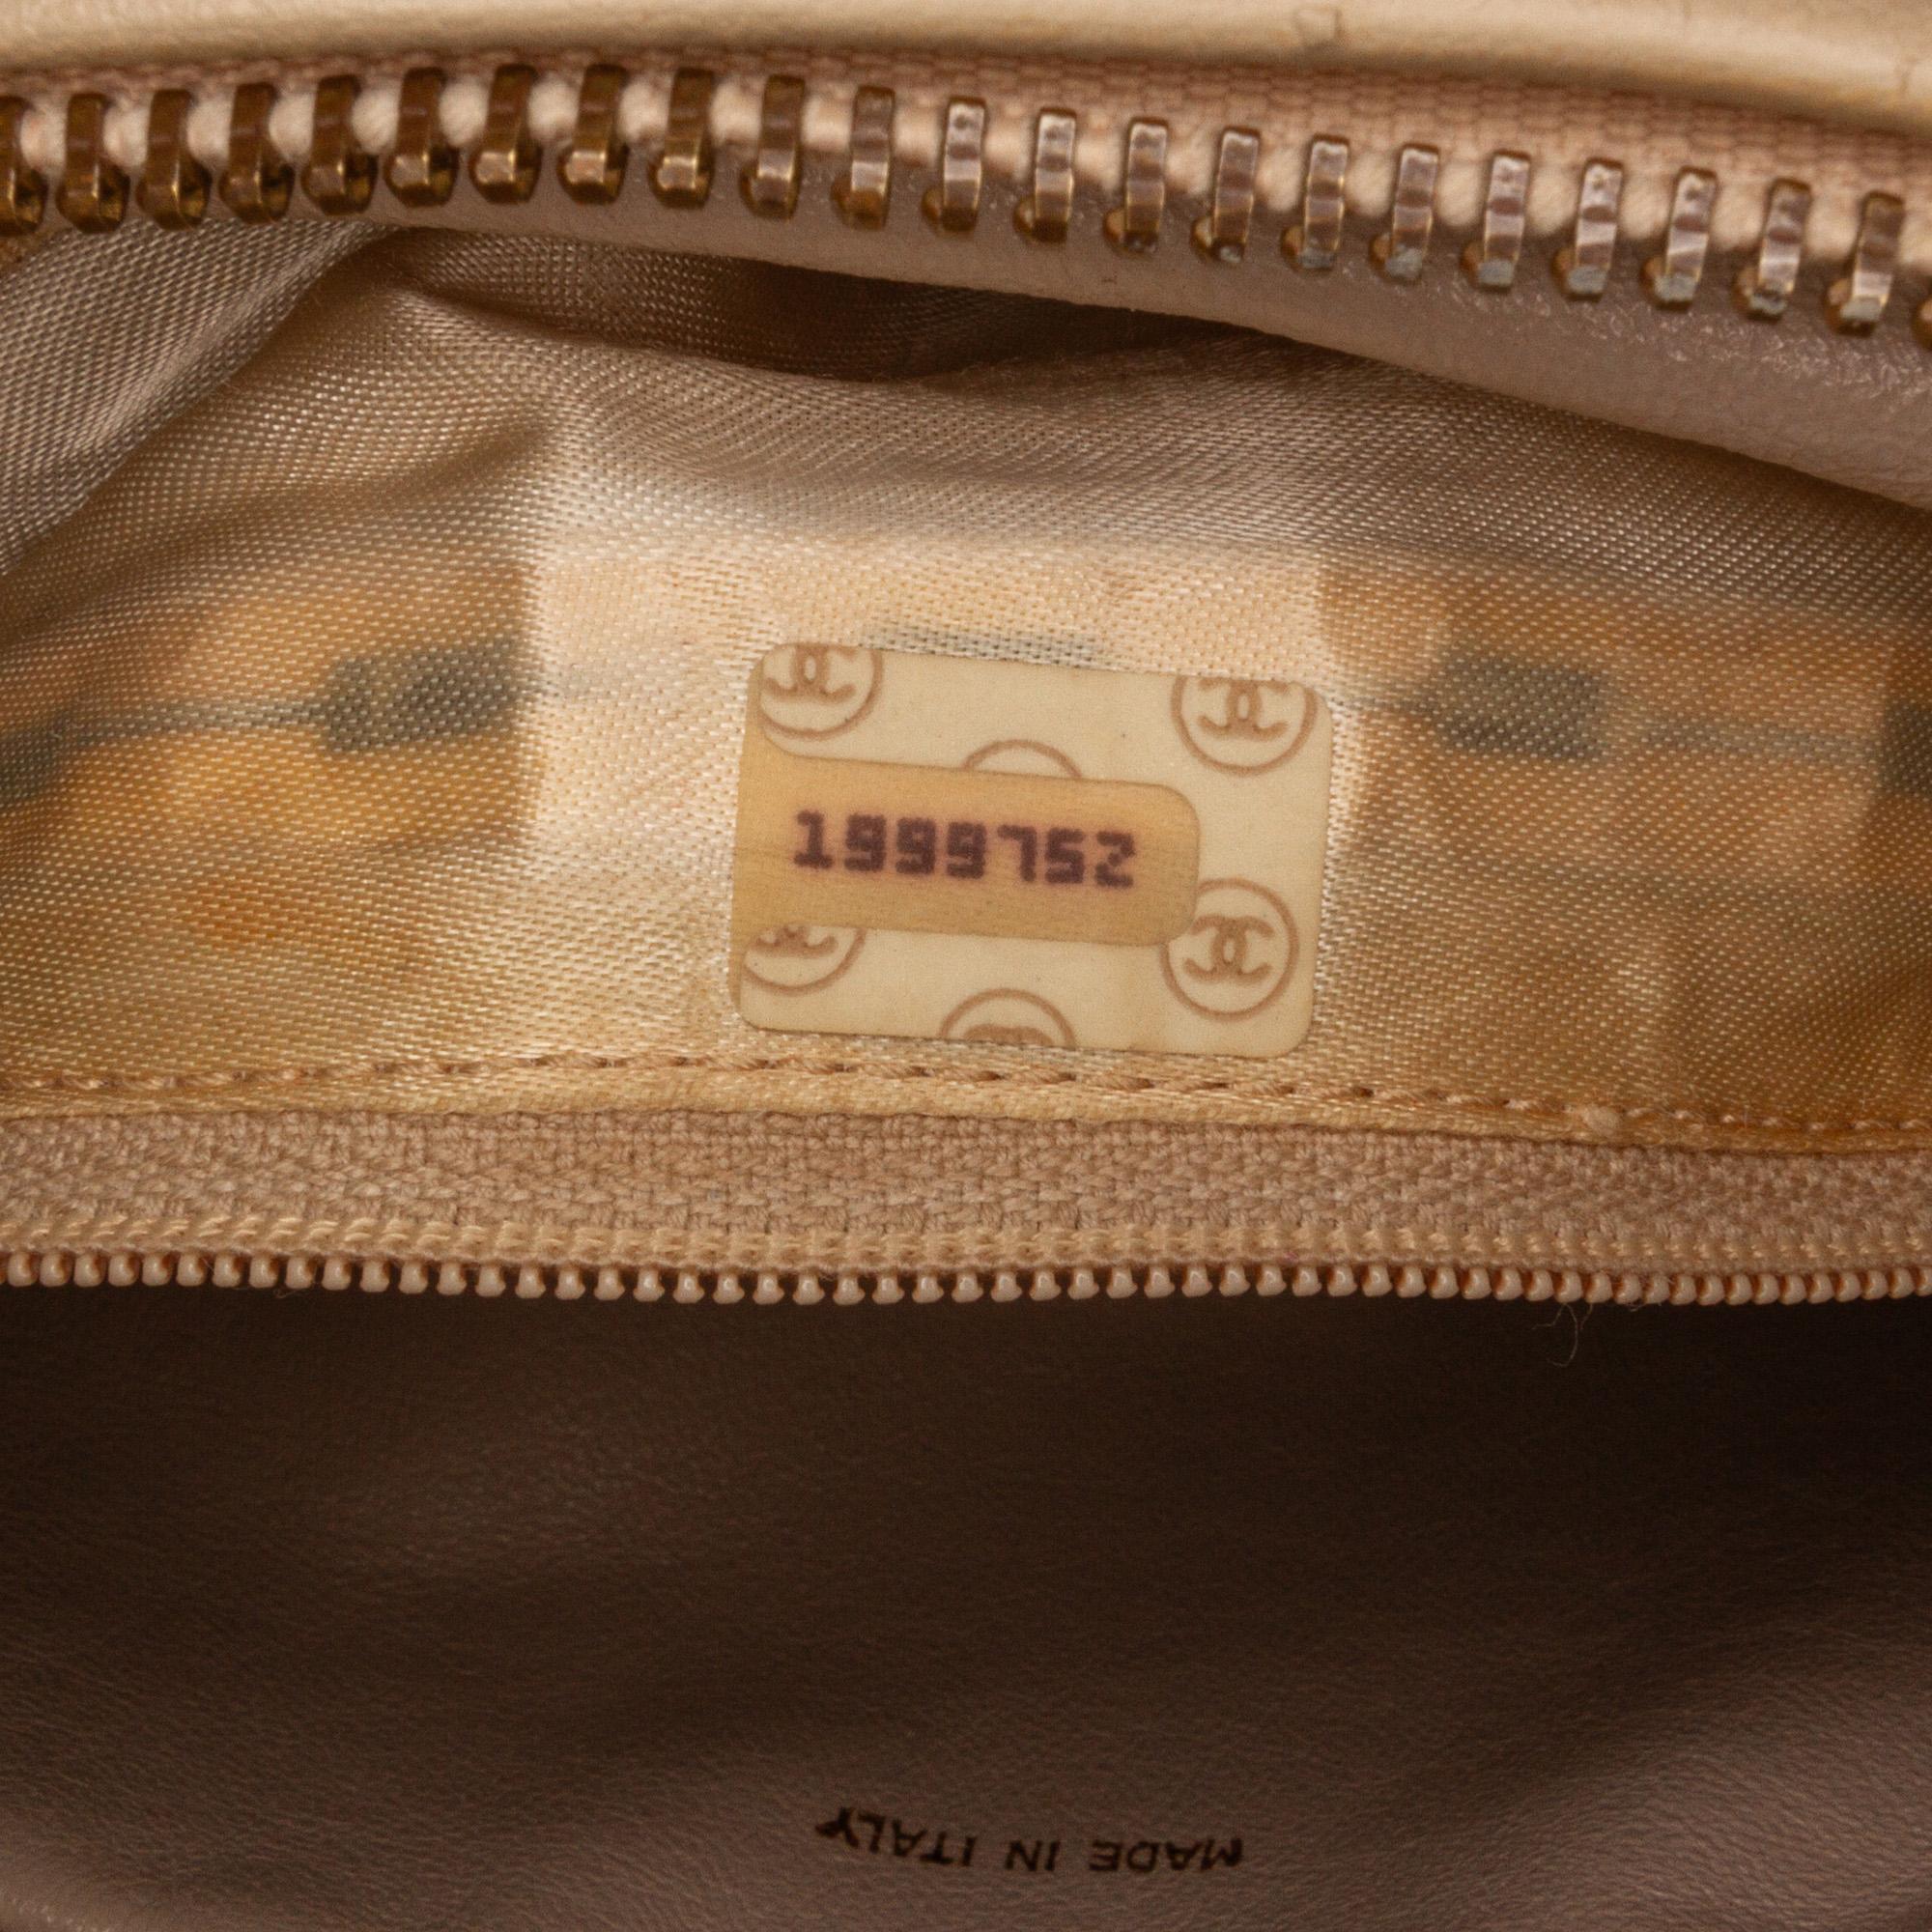 Chanel Beige Vintage CC Tassel Camera Bag